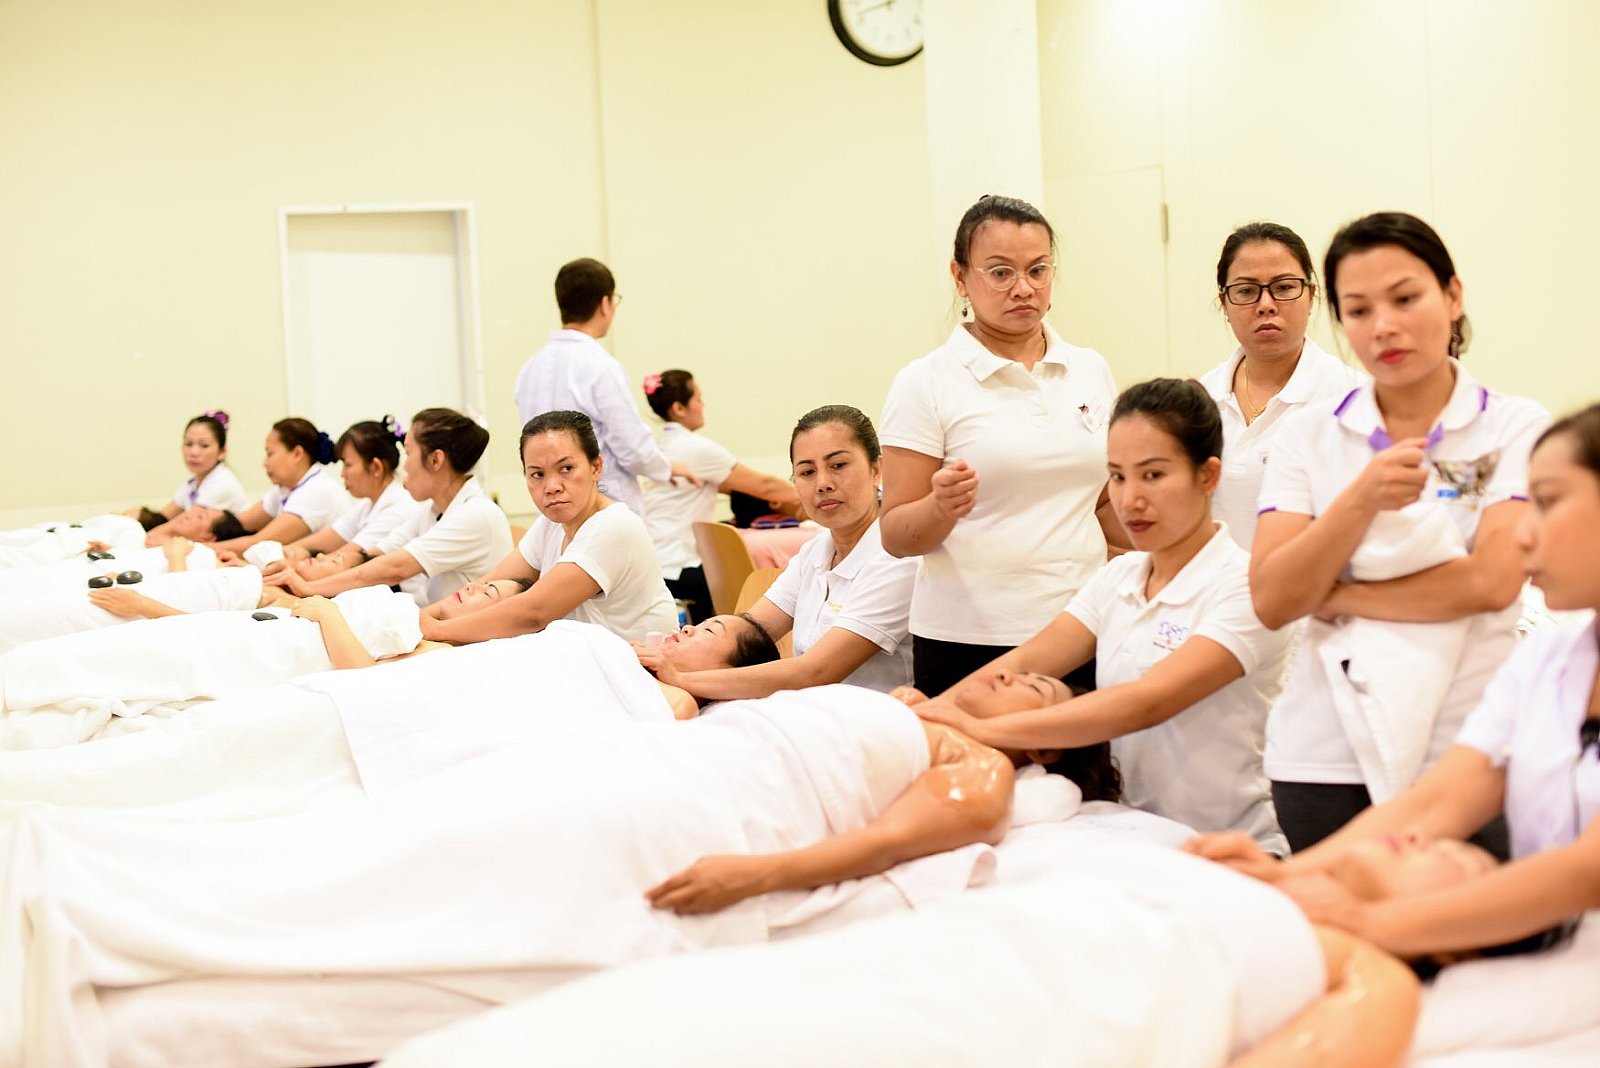 Massage Training im Wat Srinagarin in Gretzenbach 30.11. - 02.12.2018